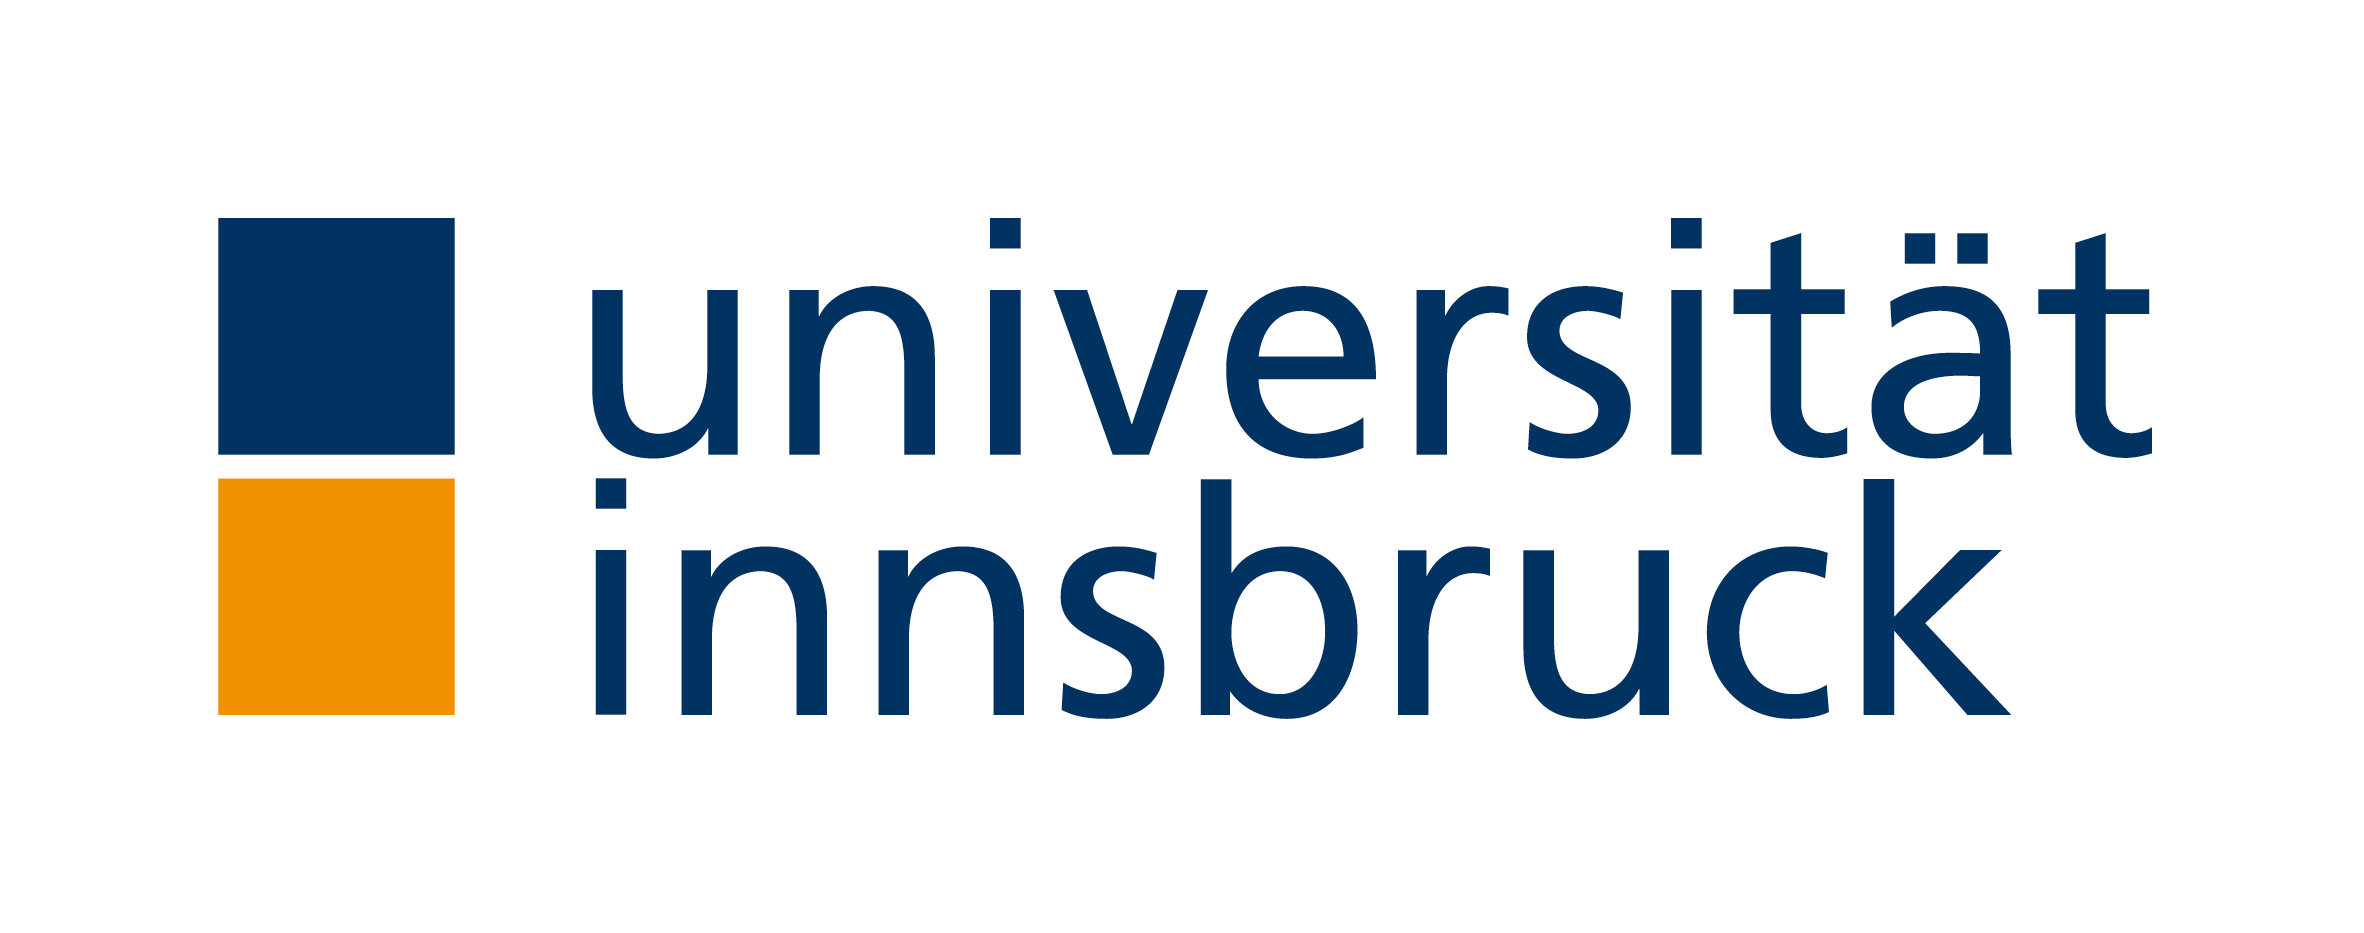 Universiteit van Innsbruck - Wikipedia